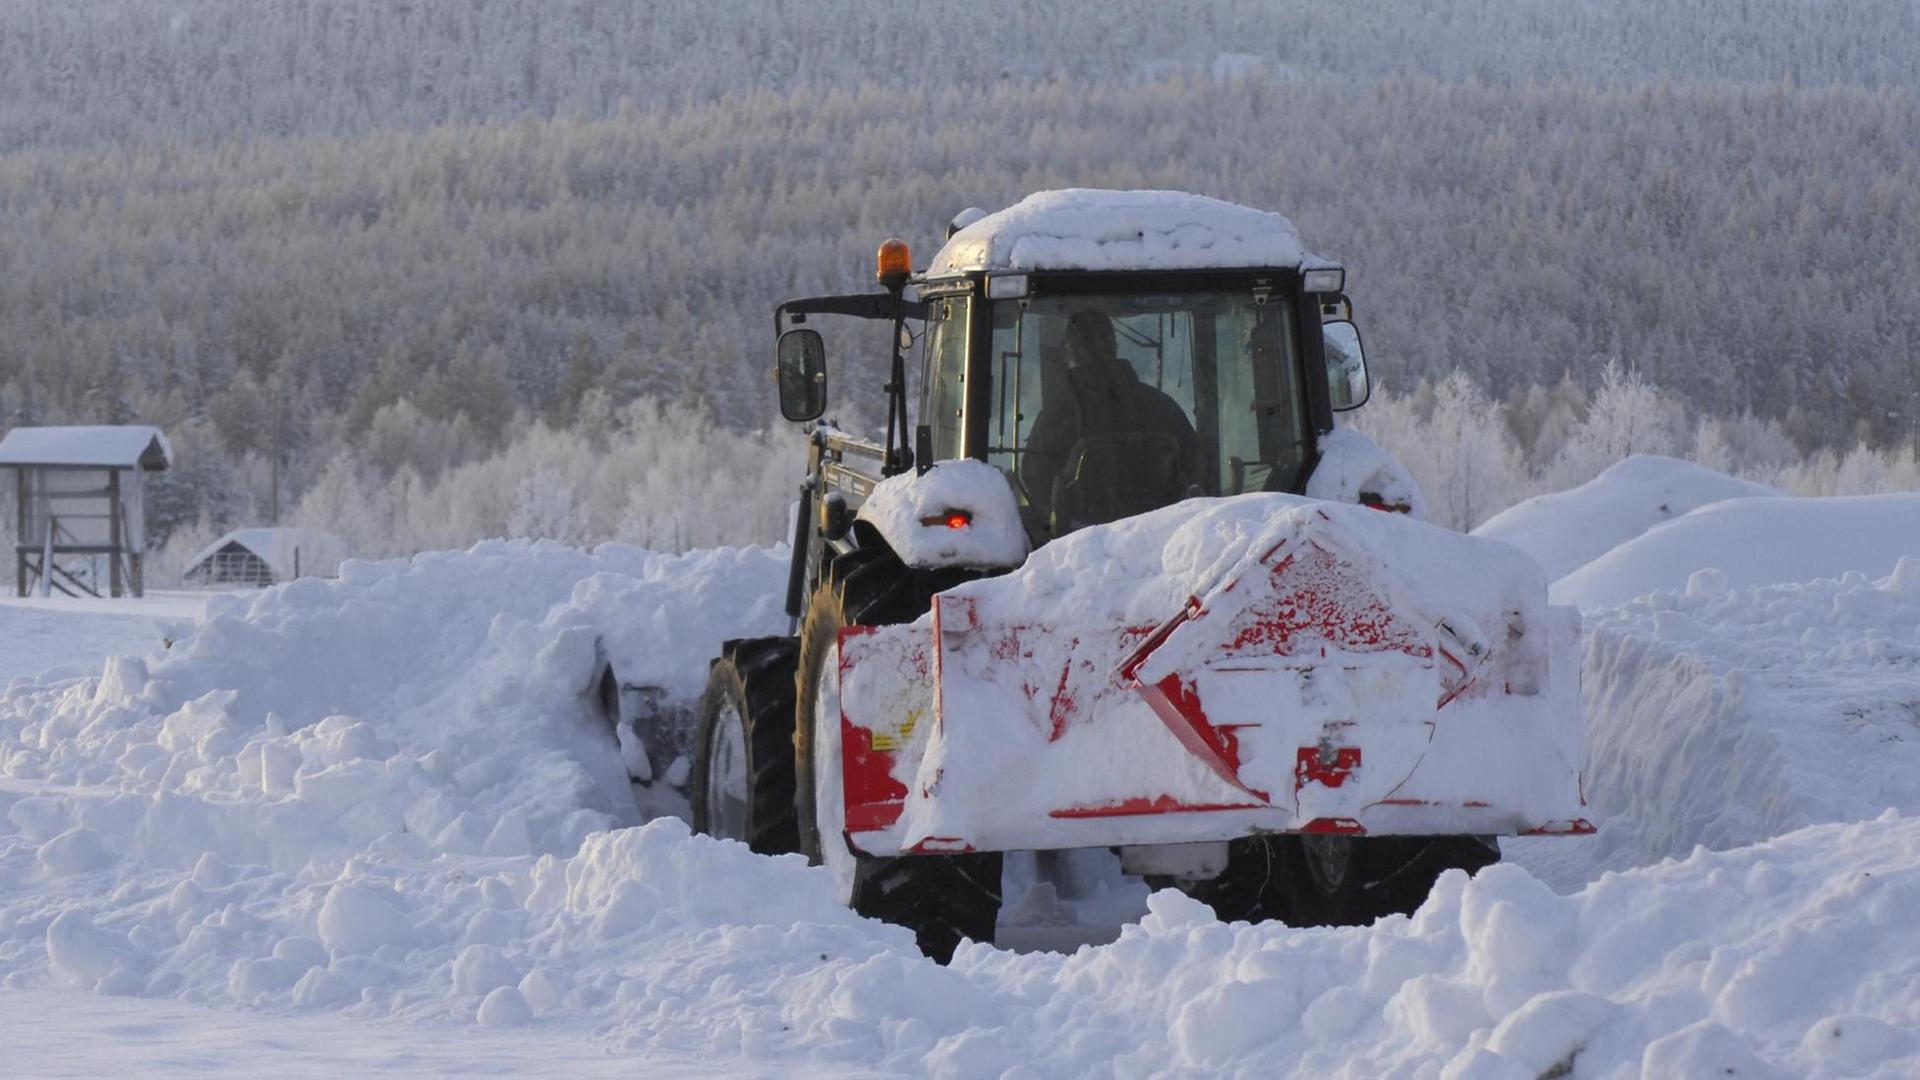 Traktor beim Schneeräumen, Ylläs, Lappland, Finnland, Europa.